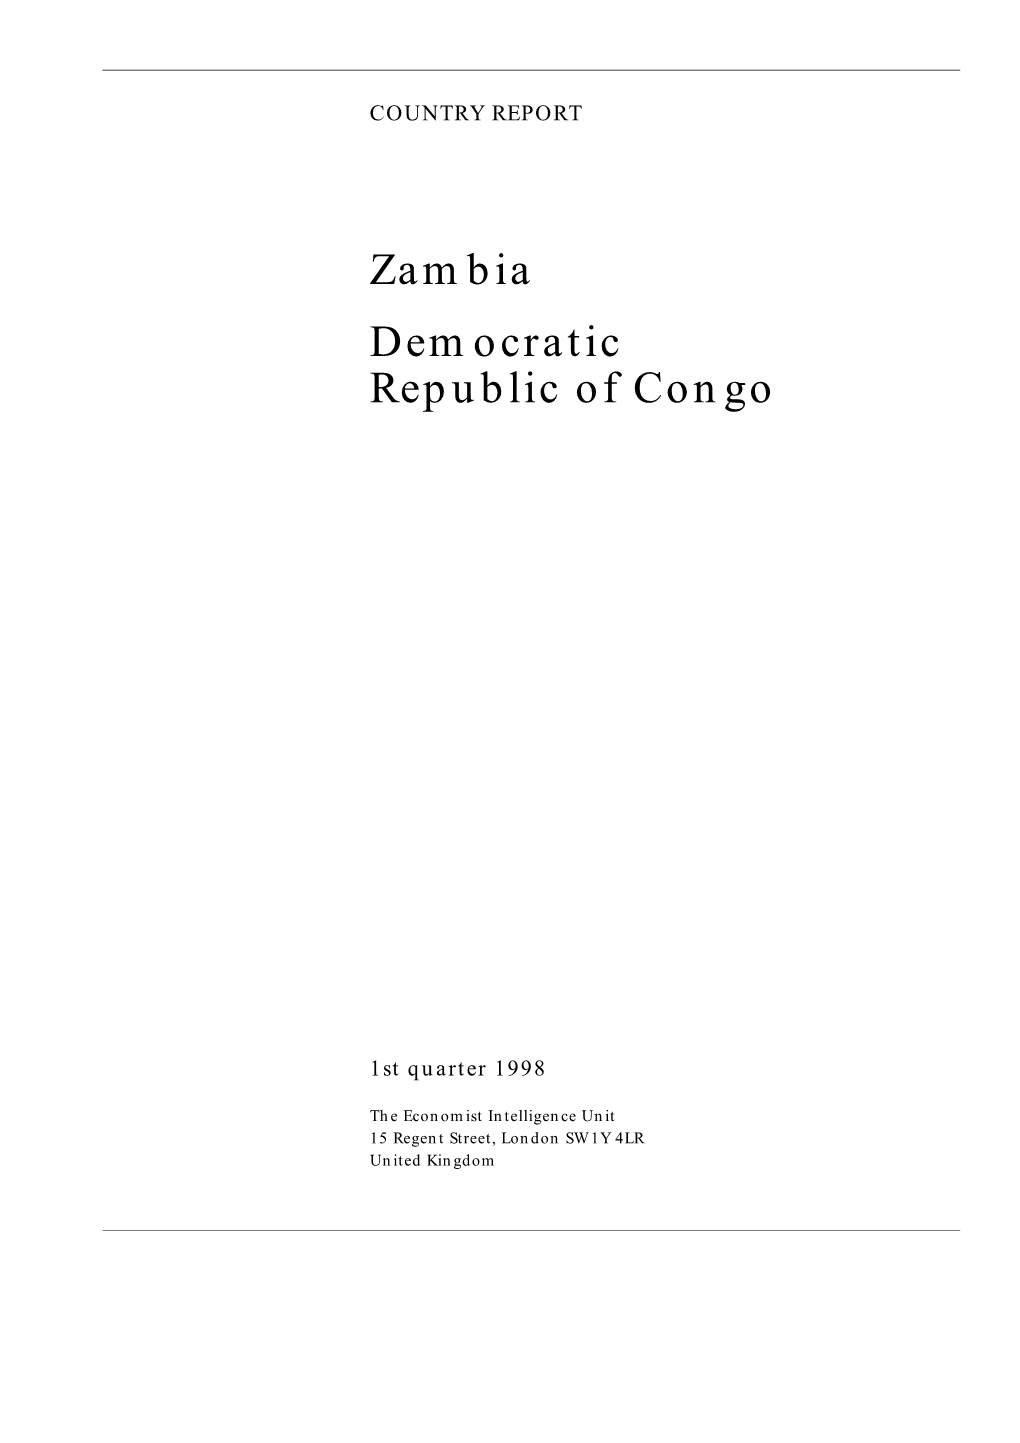 Zambia Democratic Republic of Congo